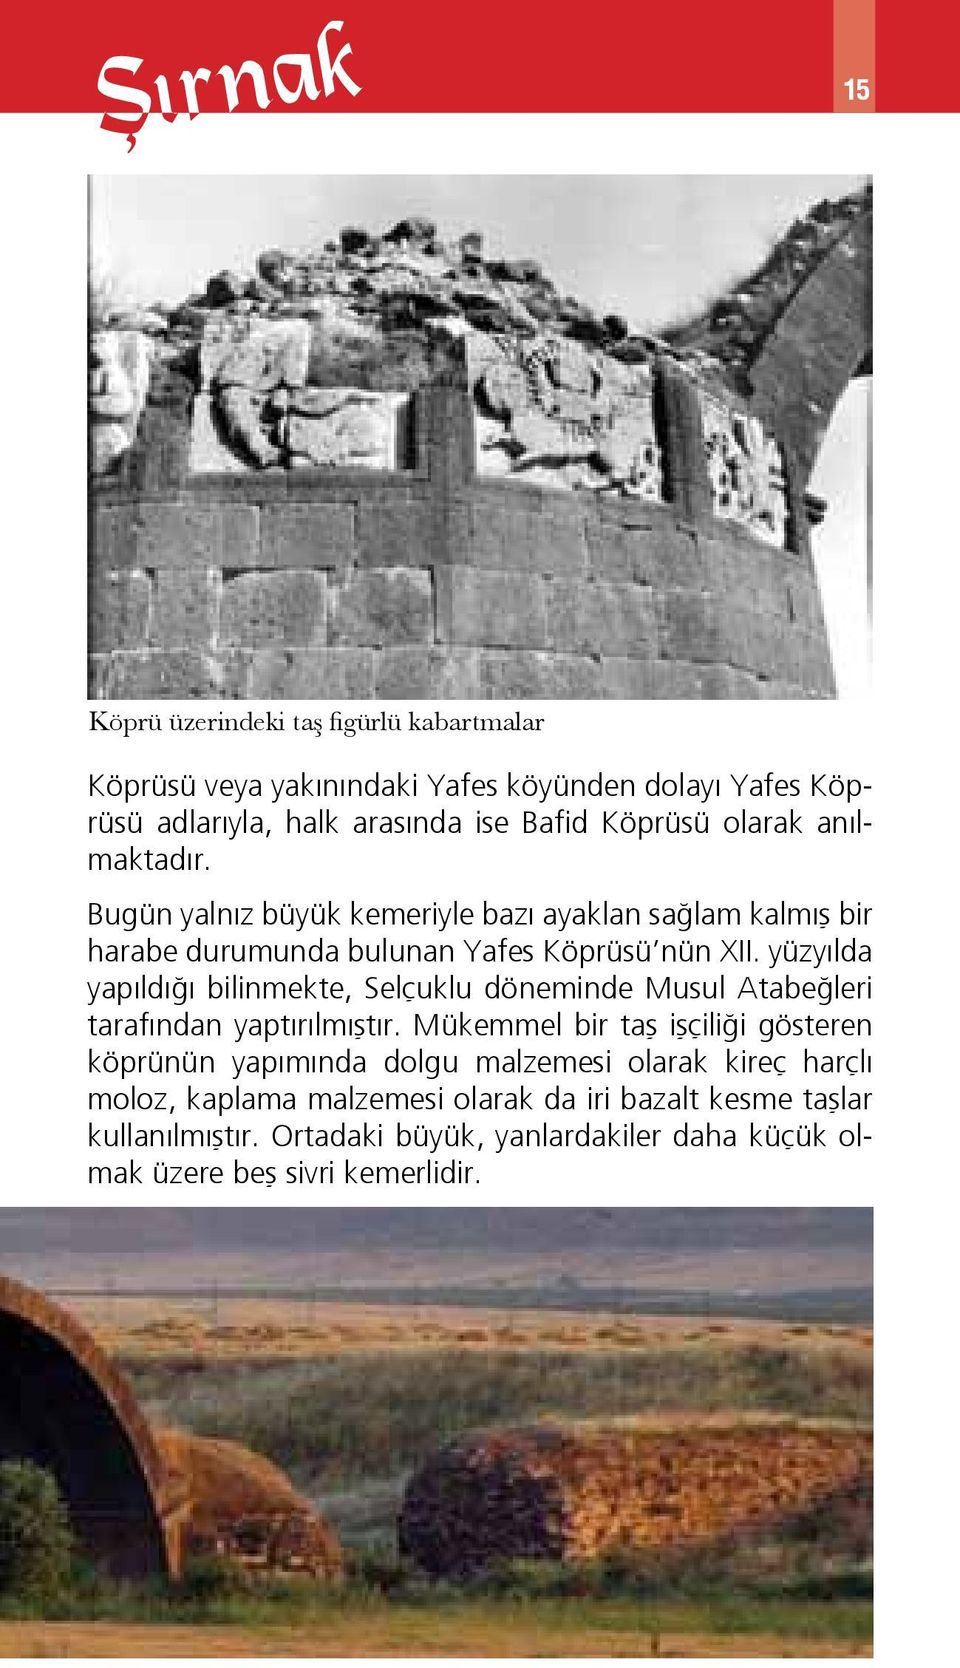 yüzyılda yapıldığı bilinmekte, Selçuklu döneminde Musul Atabeğleri tarafından yaptırılmıştır.